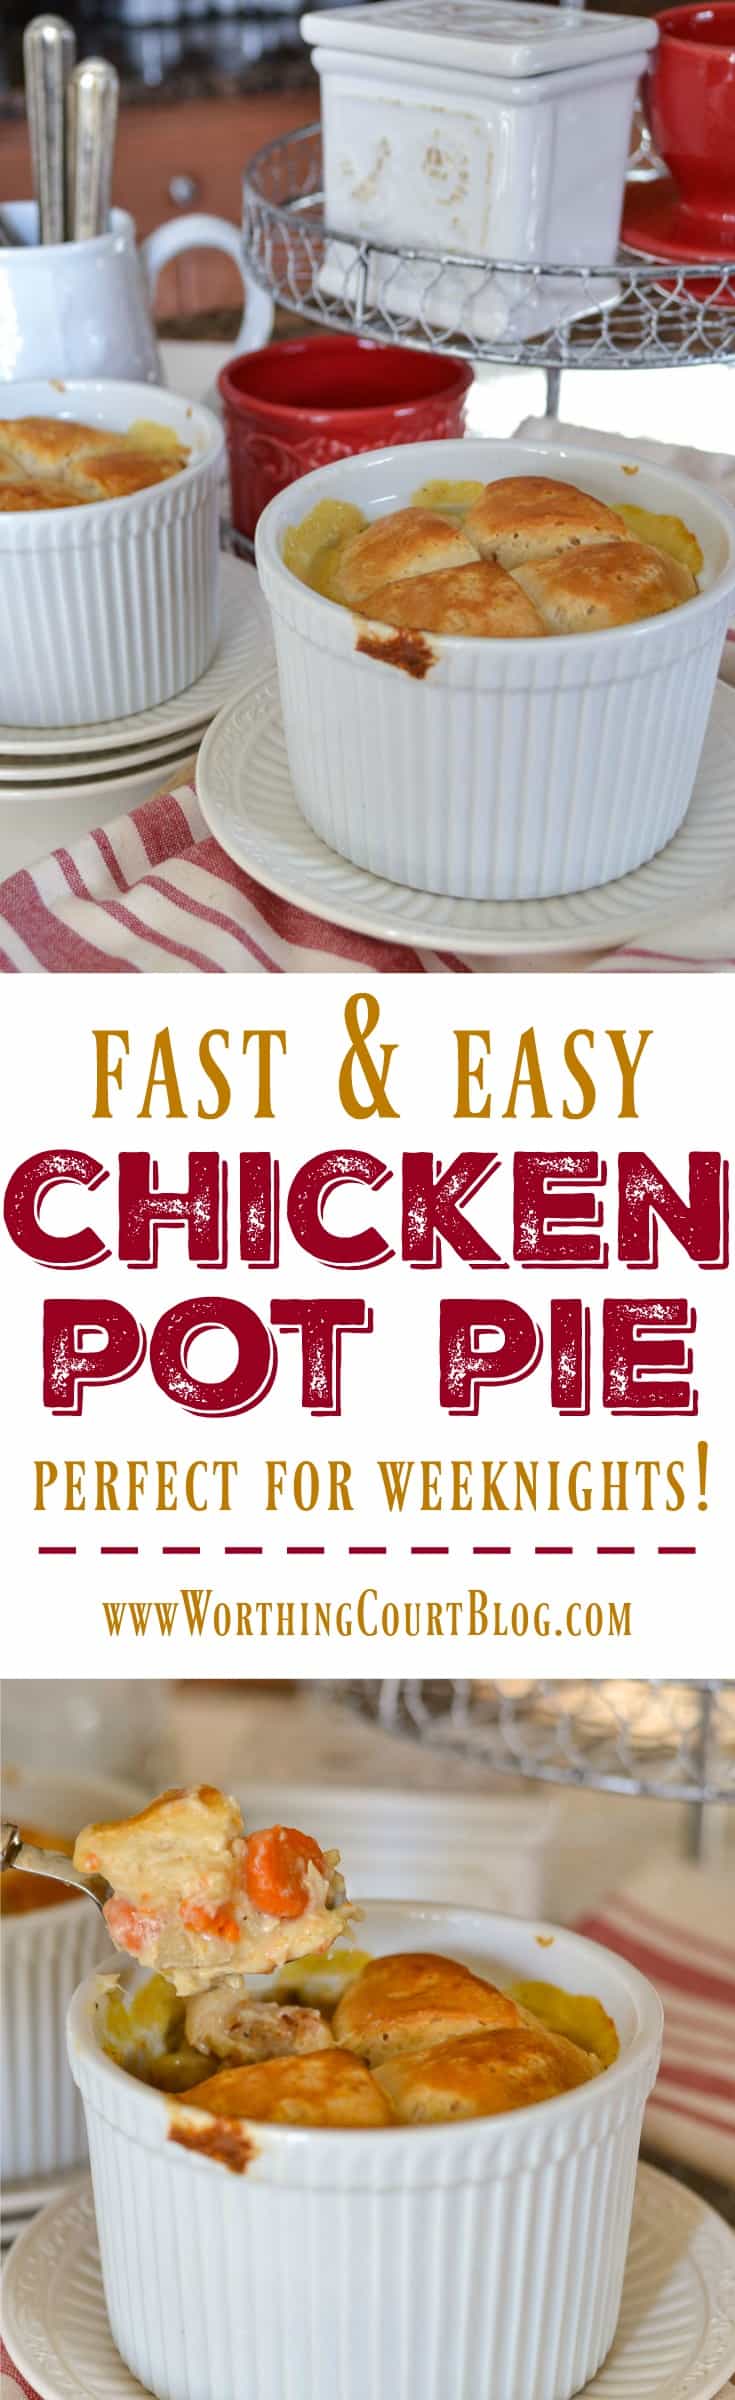 Fast & Easy Chicken Pot Pie poster.